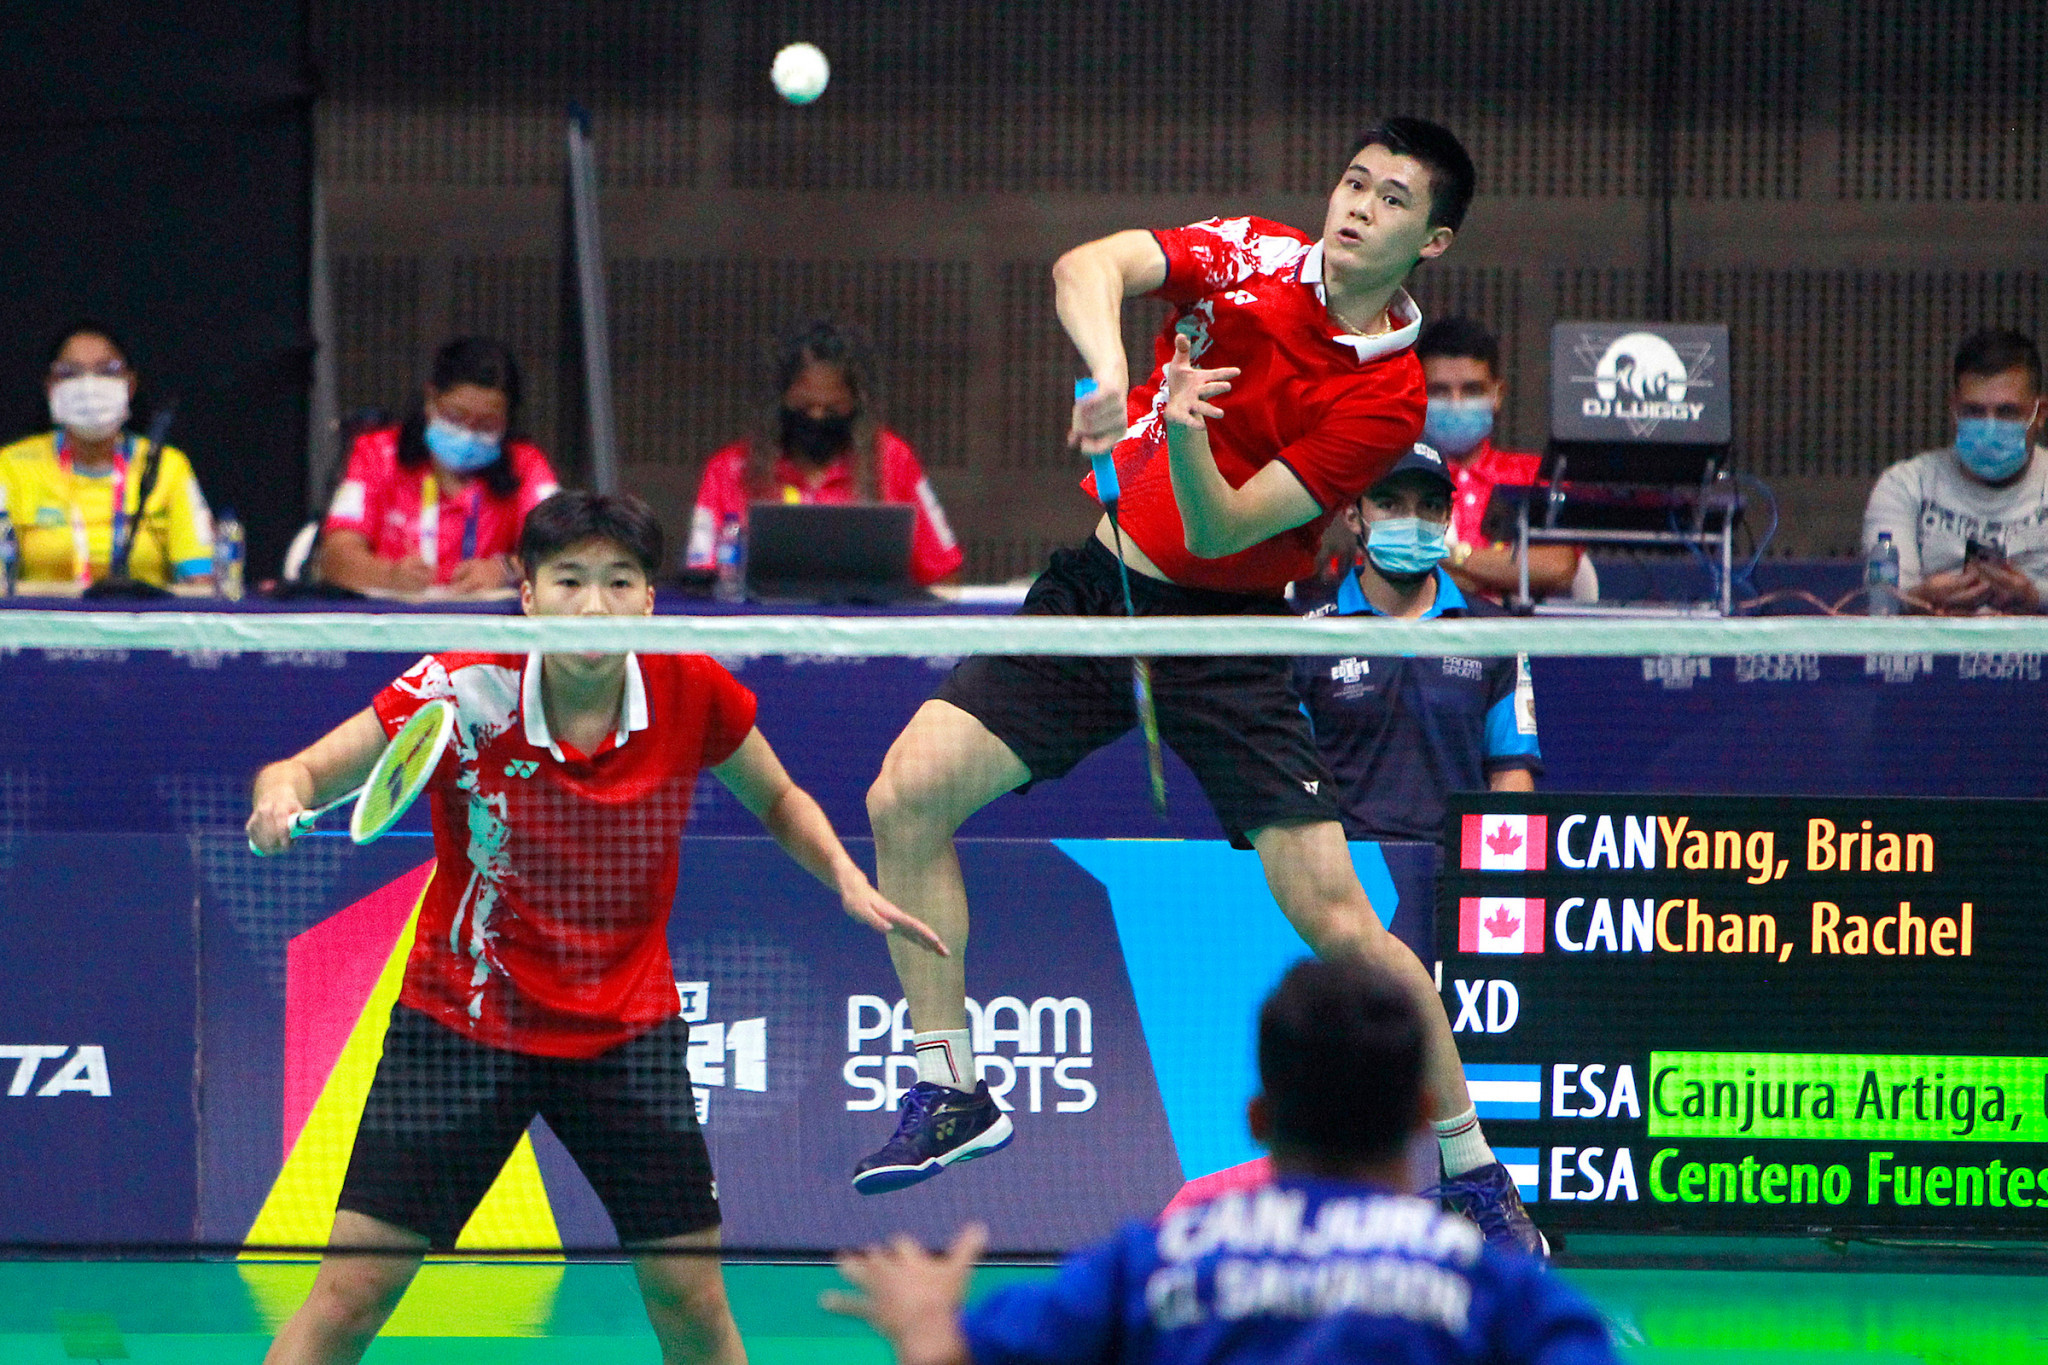 canada-jugo-perfecto-para-barrer-en-el-badminton-panamericano